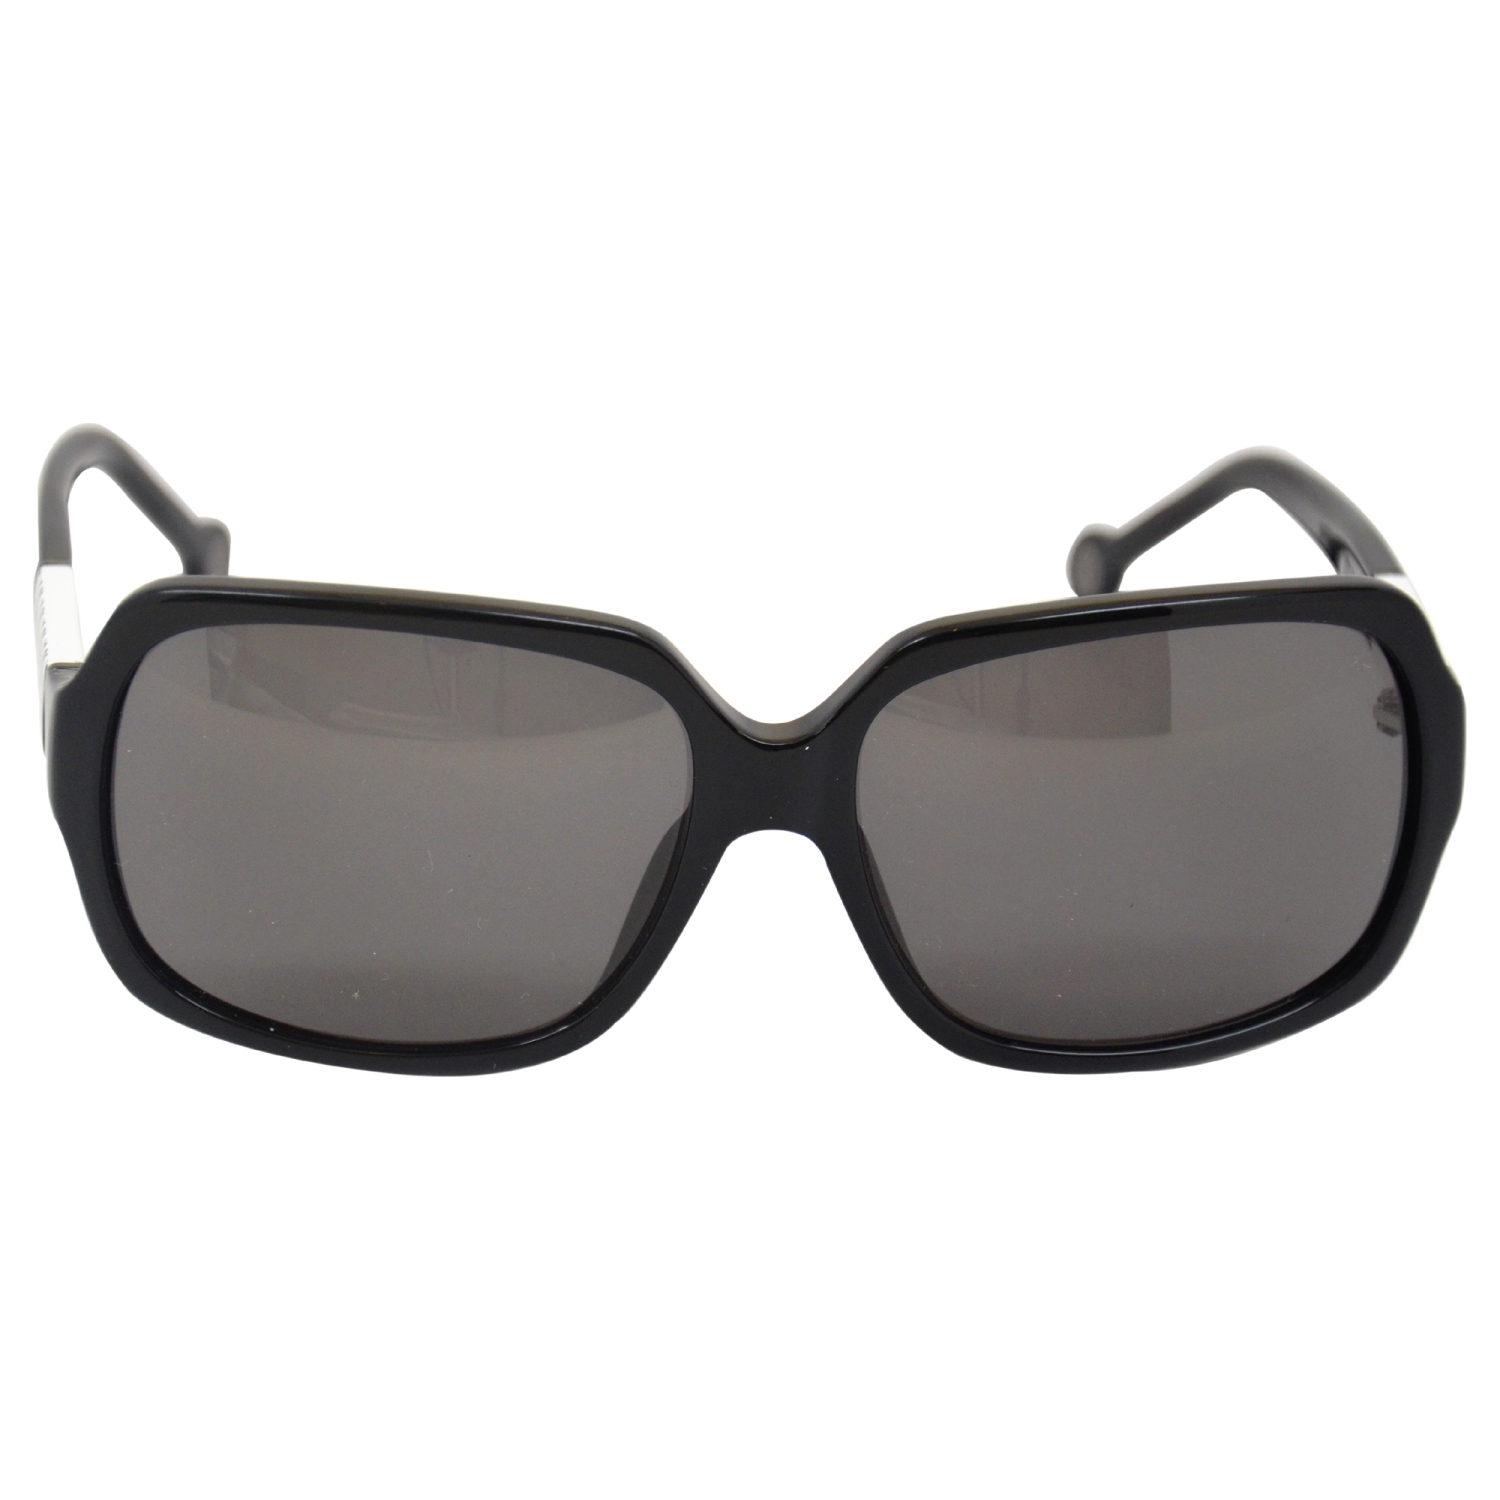 Carolina Herrera SHE537 0700 - Black by Carolina Herrera for Women - 58-15-130 mm Sunglasses